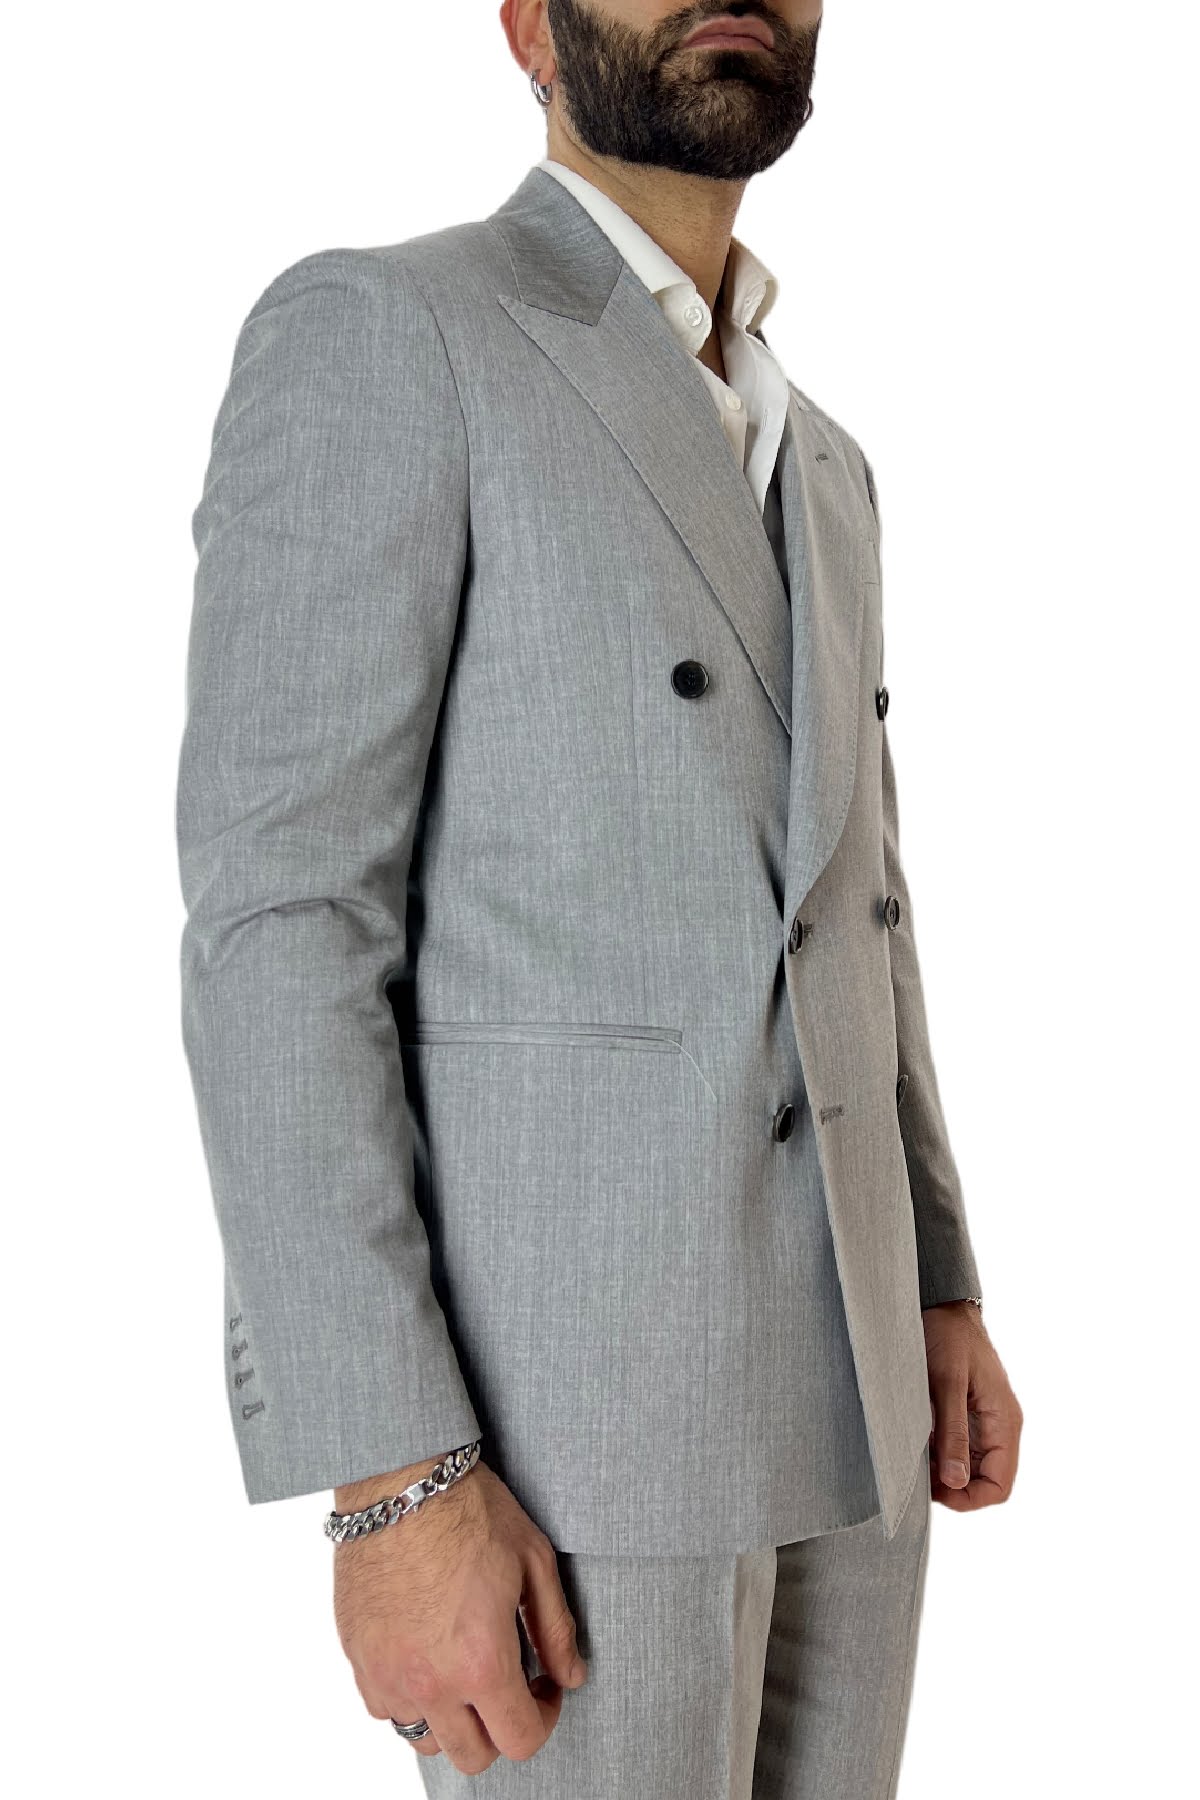 Giacca uomo doppiopetto grigio chiaro in fresco lana 100% Vitale Barberis